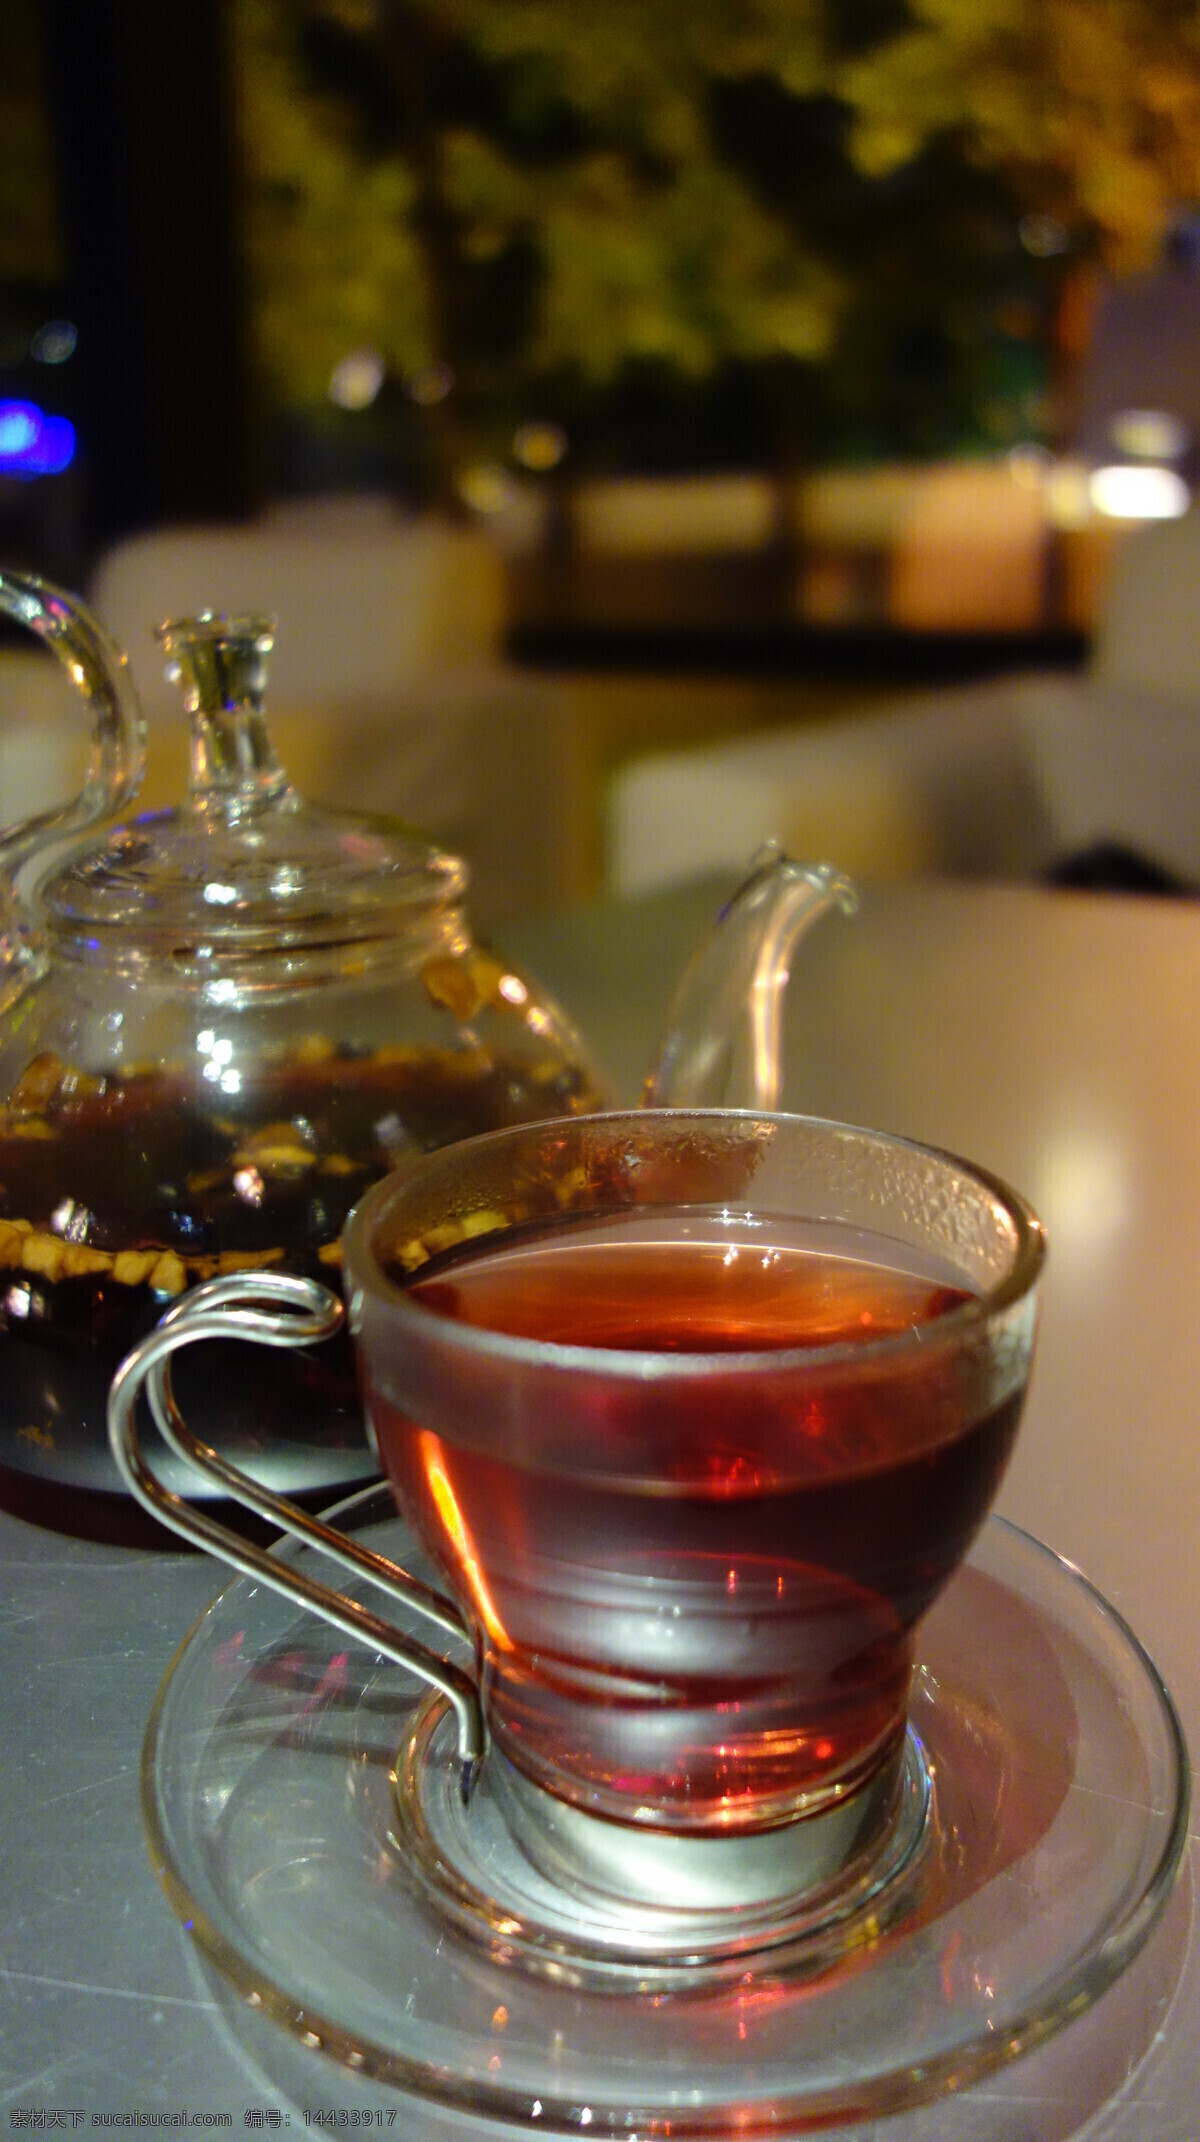 水果花茶 水果茶 花茶 玻璃杯 茶壶 下午茶 饮料酒水 餐饮美食